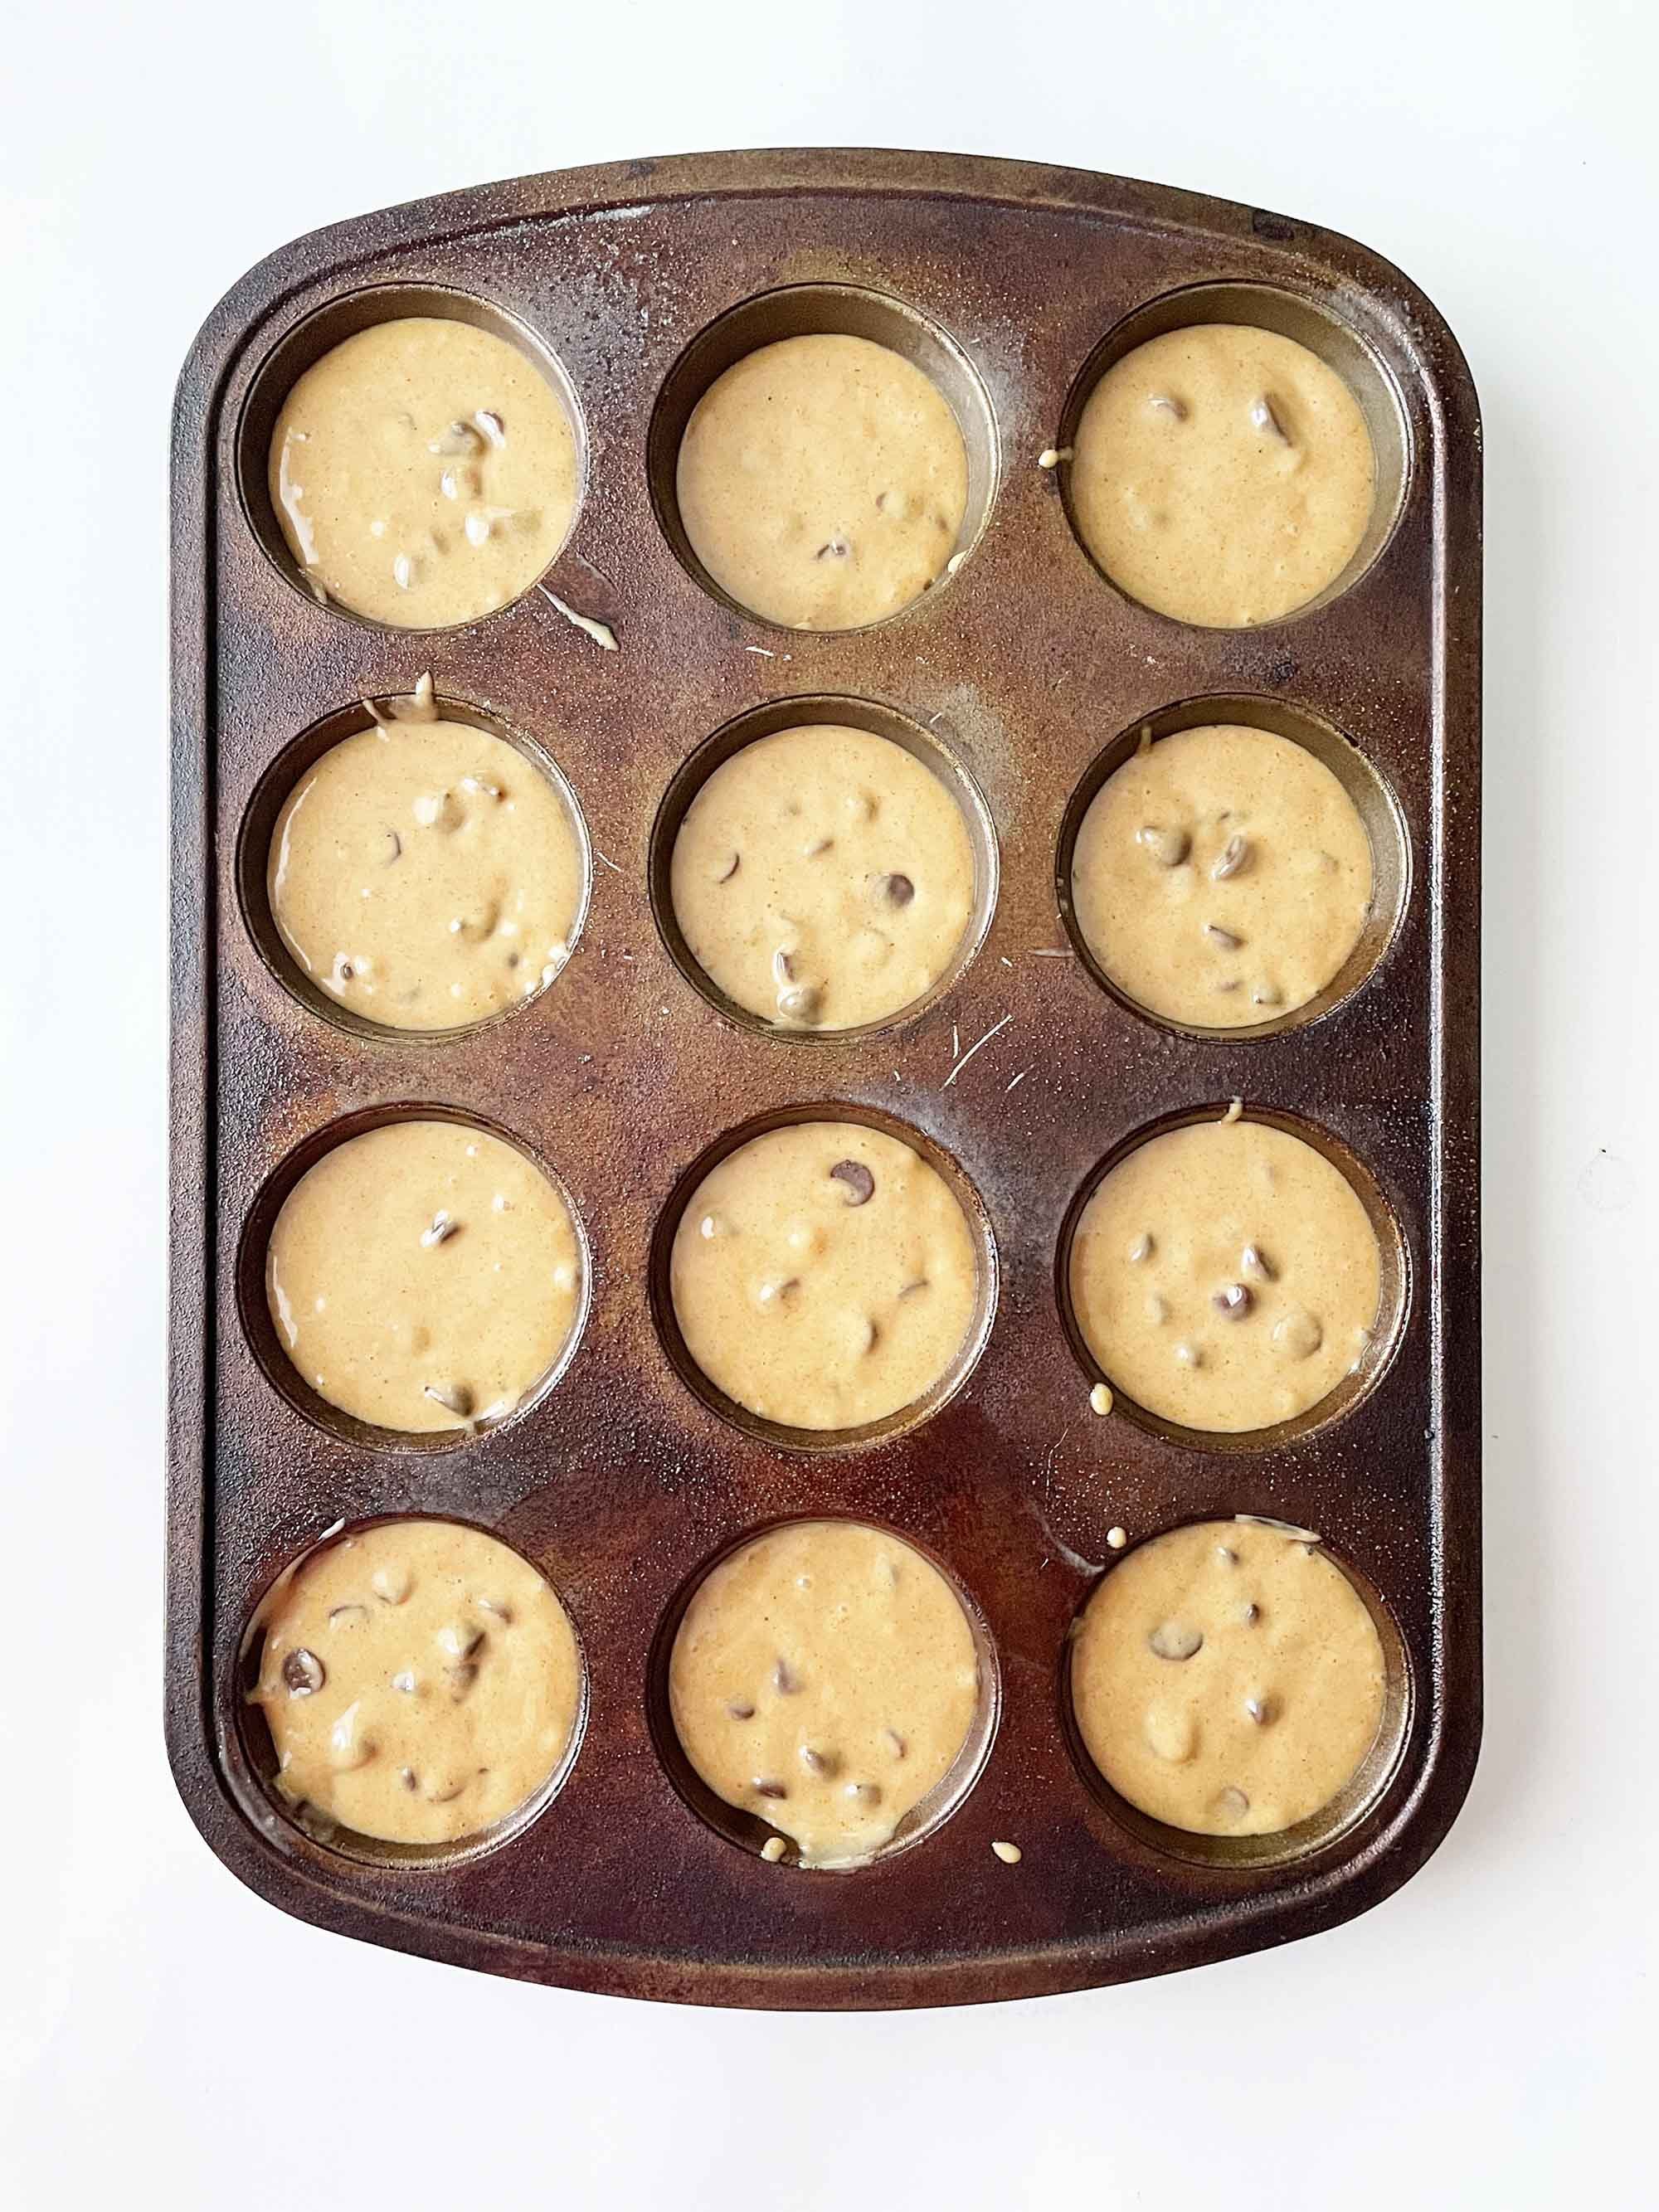 peanut-butter-banana-muffins3.jpg